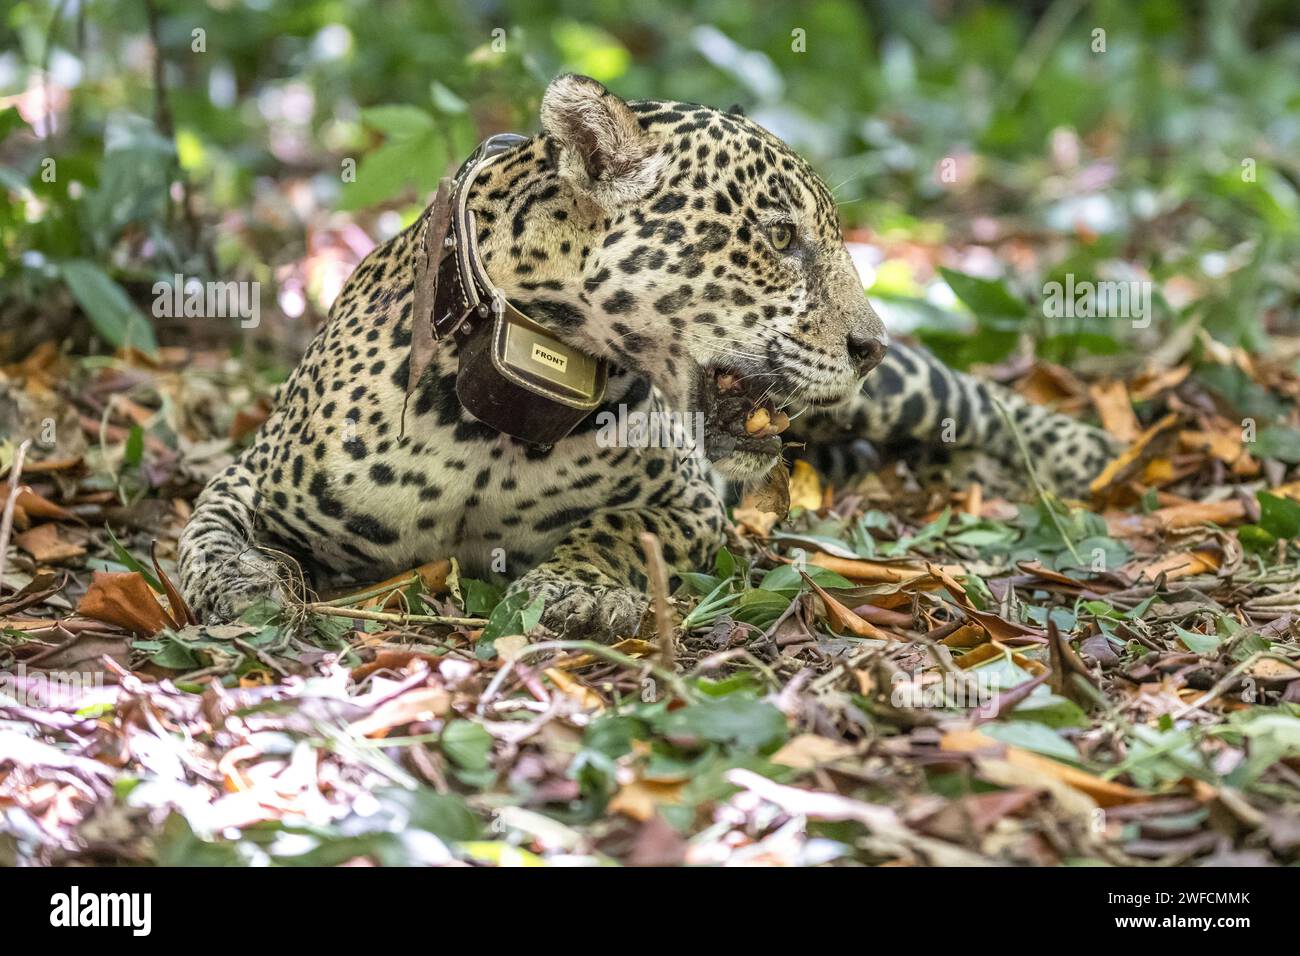 Jaguar se réveille de la sédation après un collier radio pour la surveillance et la recherche scientifique - Station écologique de Maracá-Jipioca - Île de Maracá Banque D'Images